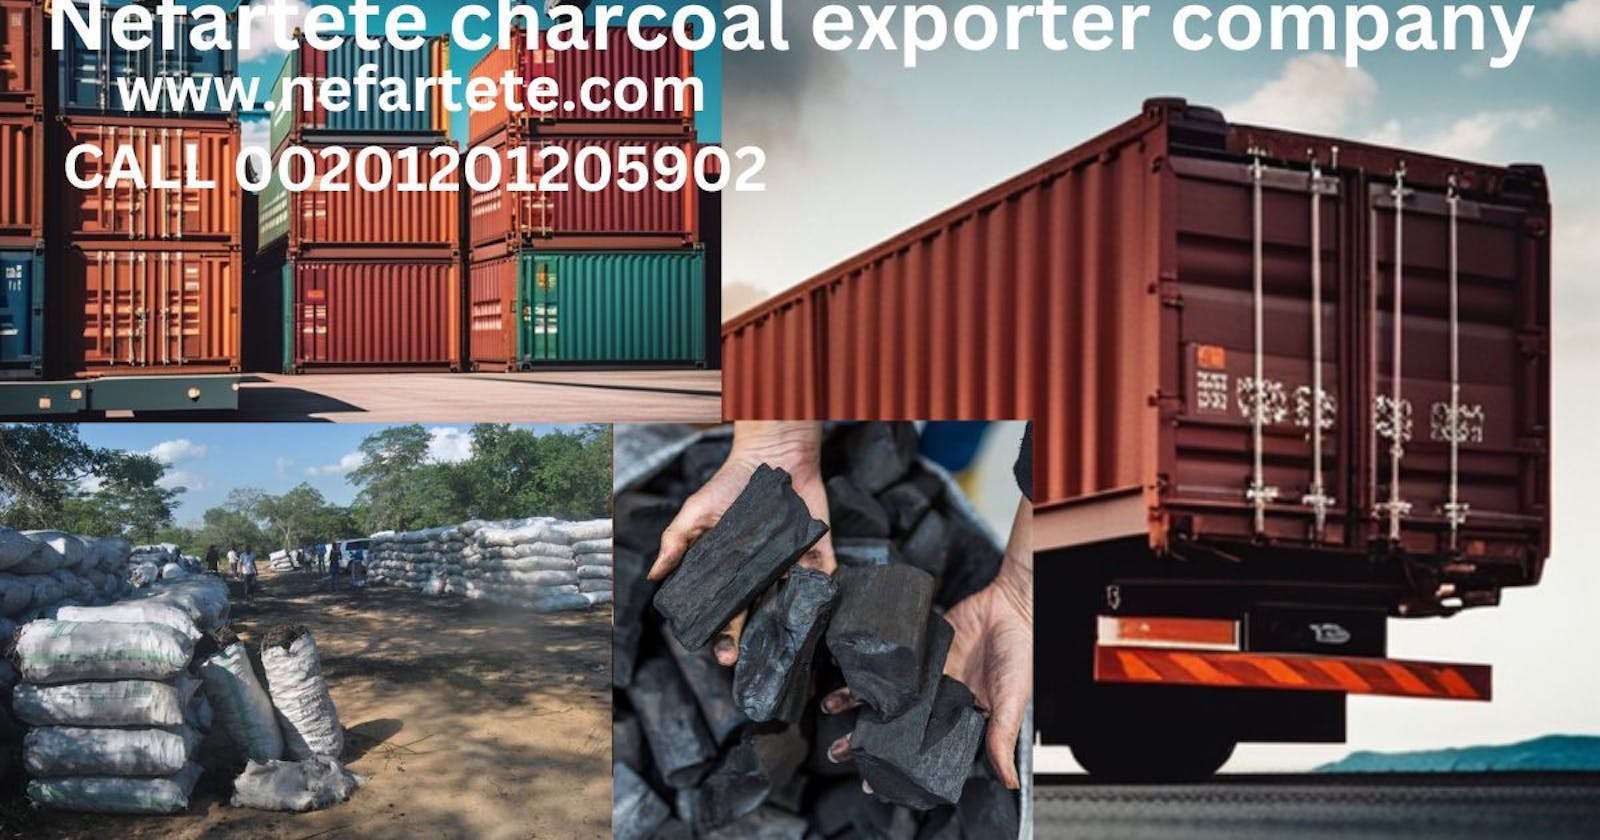 Premium Nefartete Charcoal Exporter Services